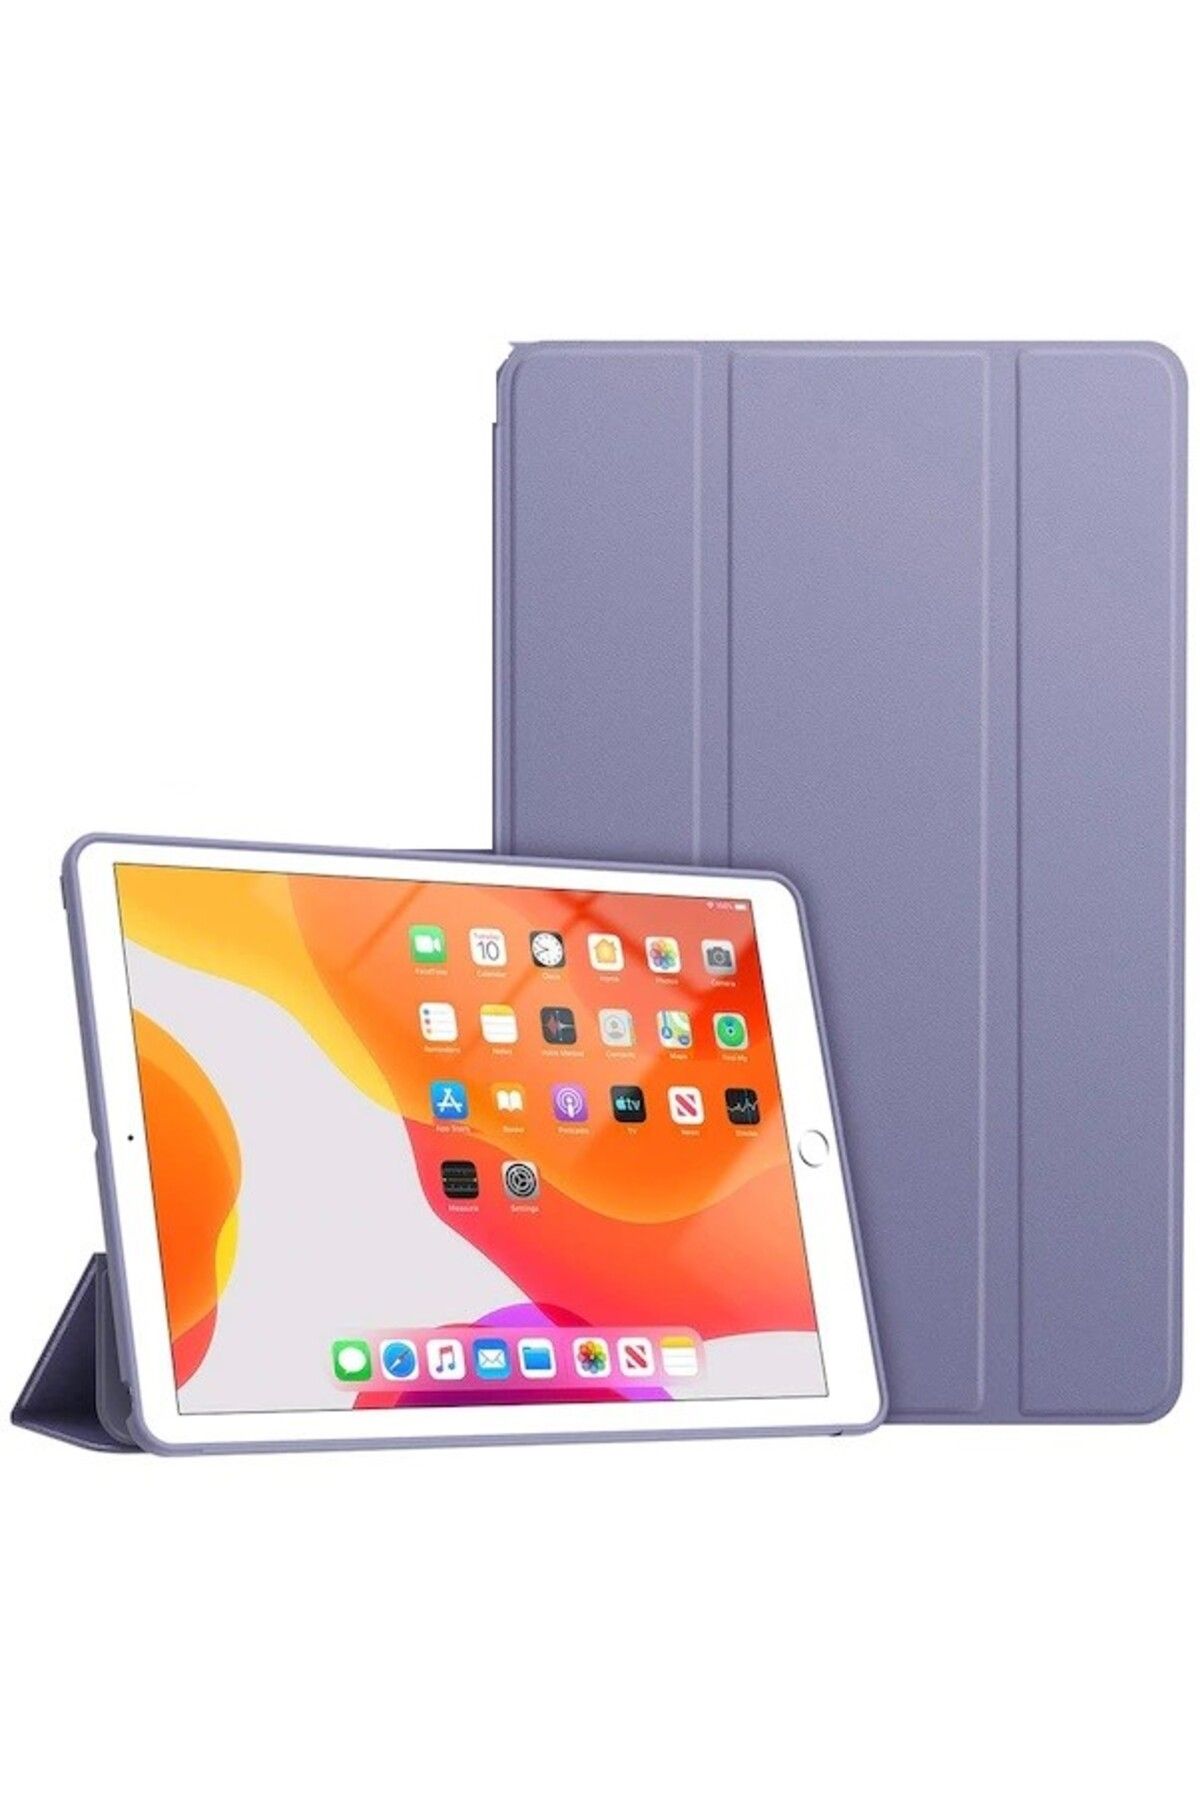 TEKNETSTORE Apple Ipad 8. Ve 9. Nesil 2020 /2021 10.2 Inç Tablet Flip Smart Standlı Akıllı Kılıf Smart Cover